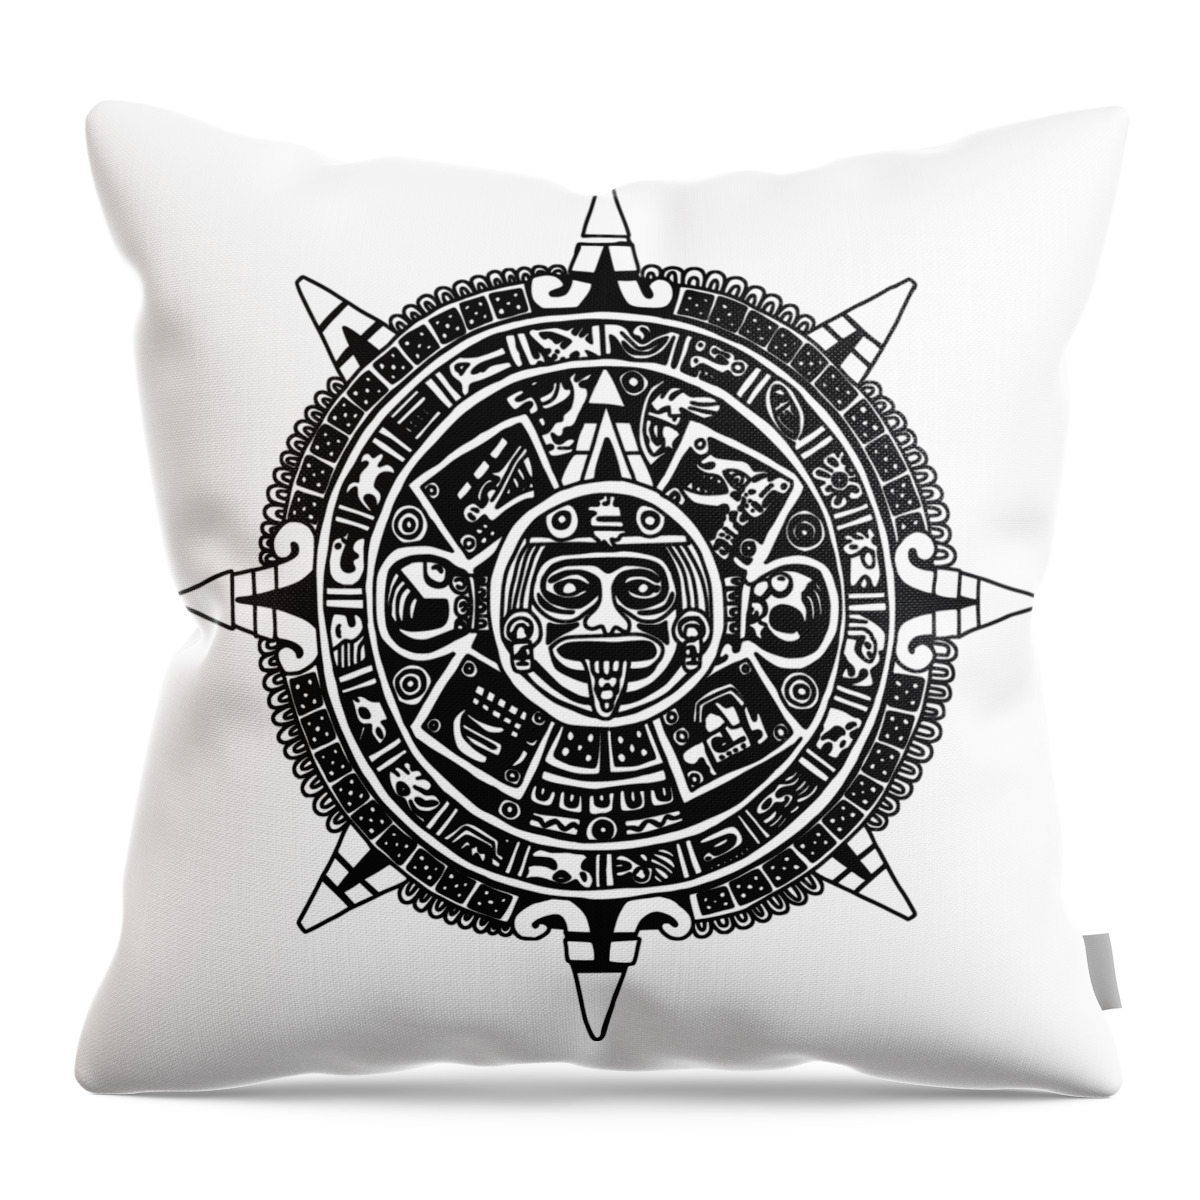 Aztec Throw Pillow featuring the digital art Aztecs Calendar by Piotr Dulski